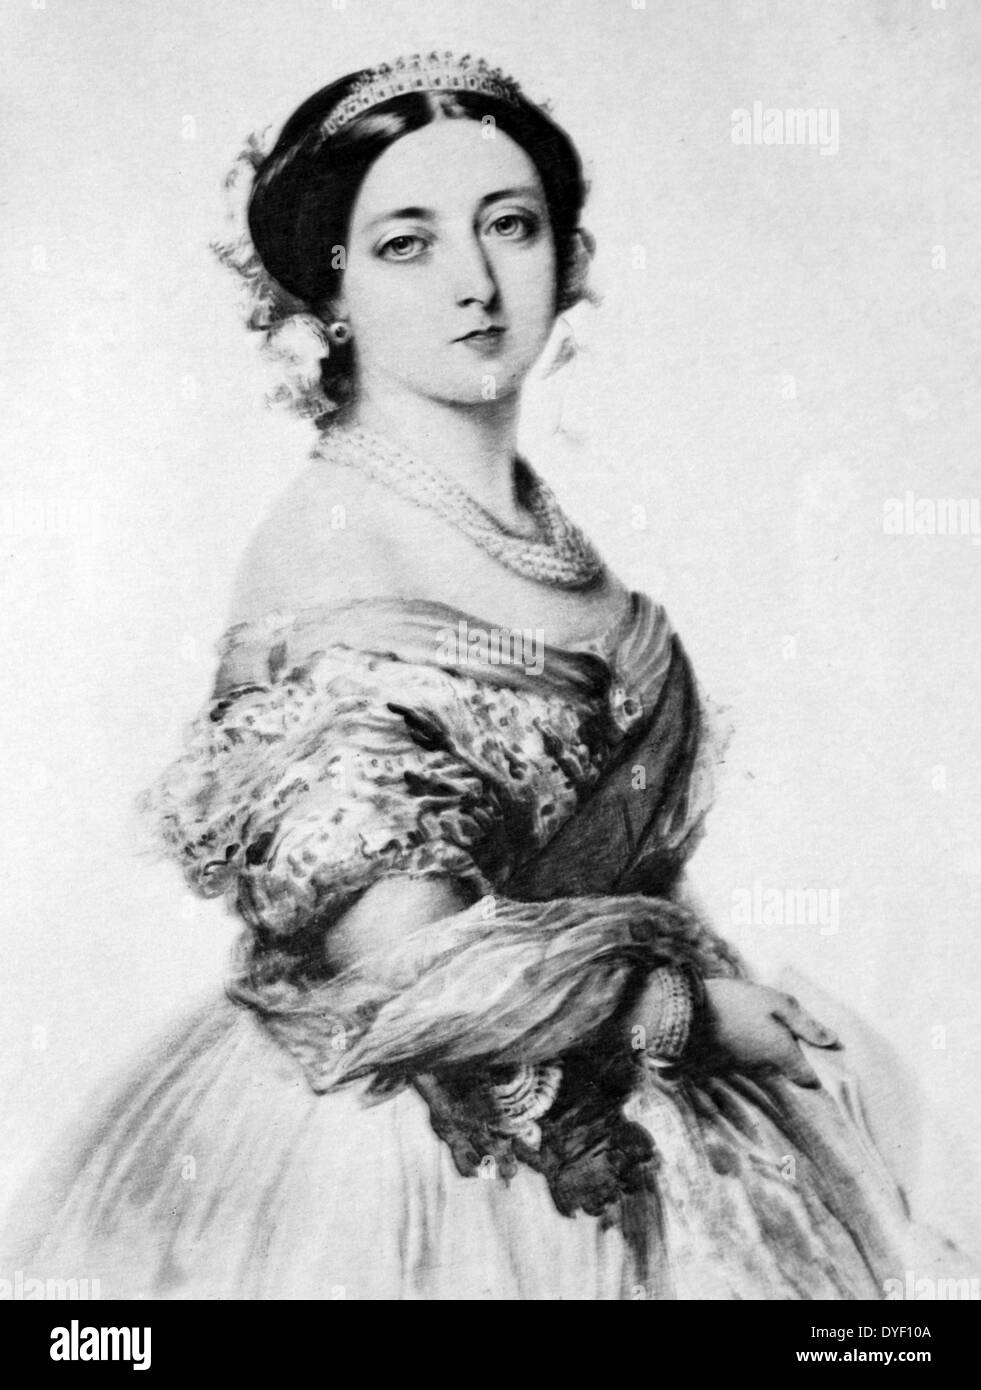 Un retrato de la reina Victoria desde 1855. Creado a partir de una acuarela, por J. Winterhalter en el Palacio de Buckingham. Muestra una joven reina de lado en posición vertical de longitud mediana. Foto de stock